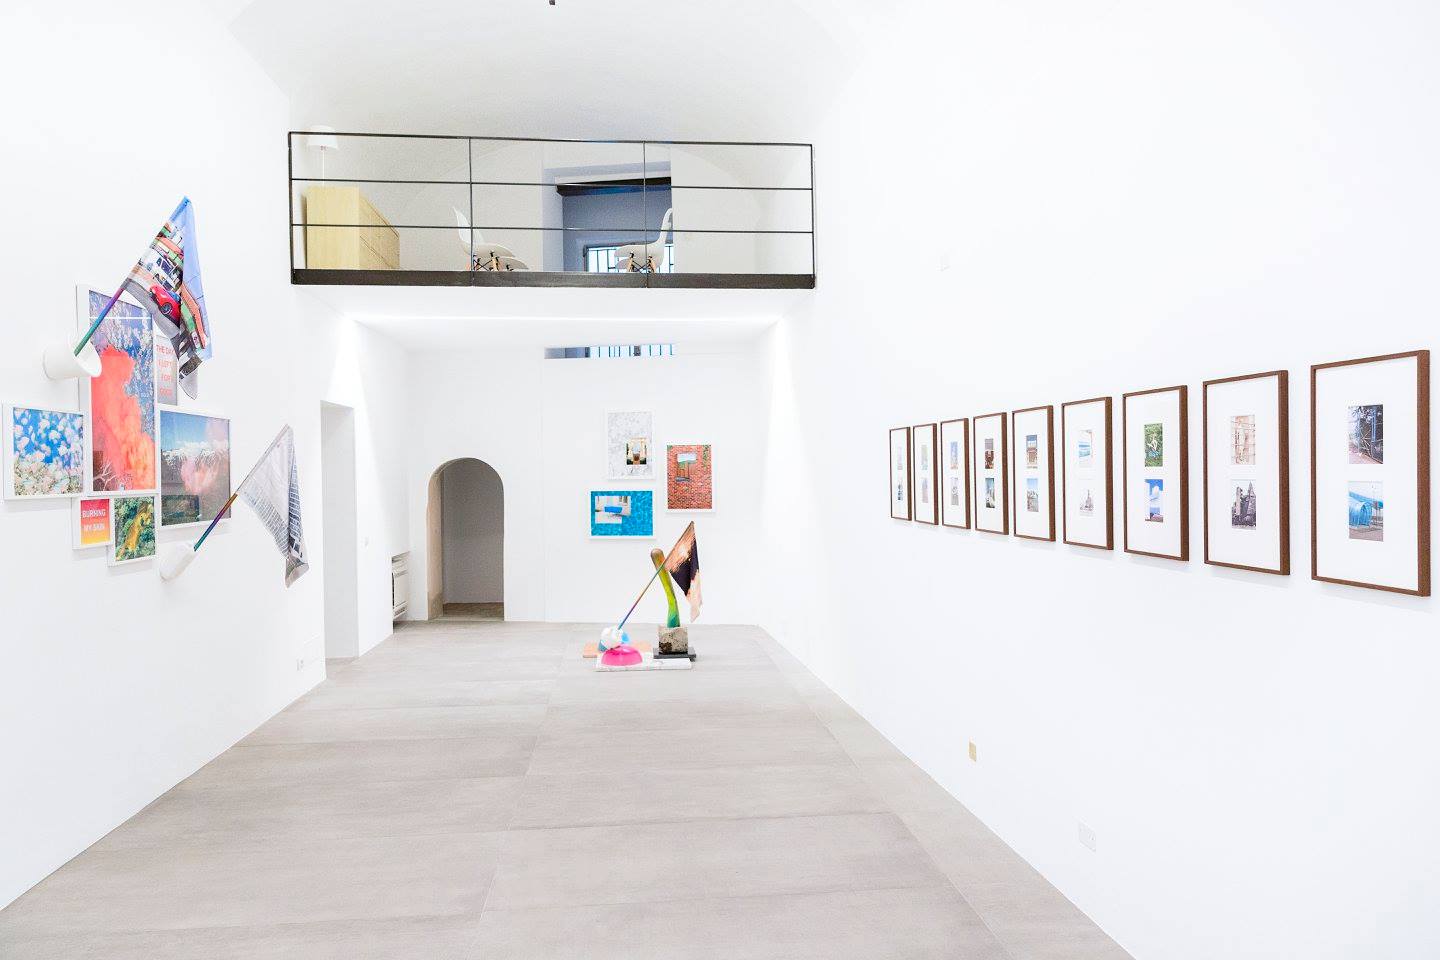 In una piccola stanza nel cuore di Piacenza, c'è UNA galleria, un nuovo spazio dedicato alla ricerca nel campo delle arti visive